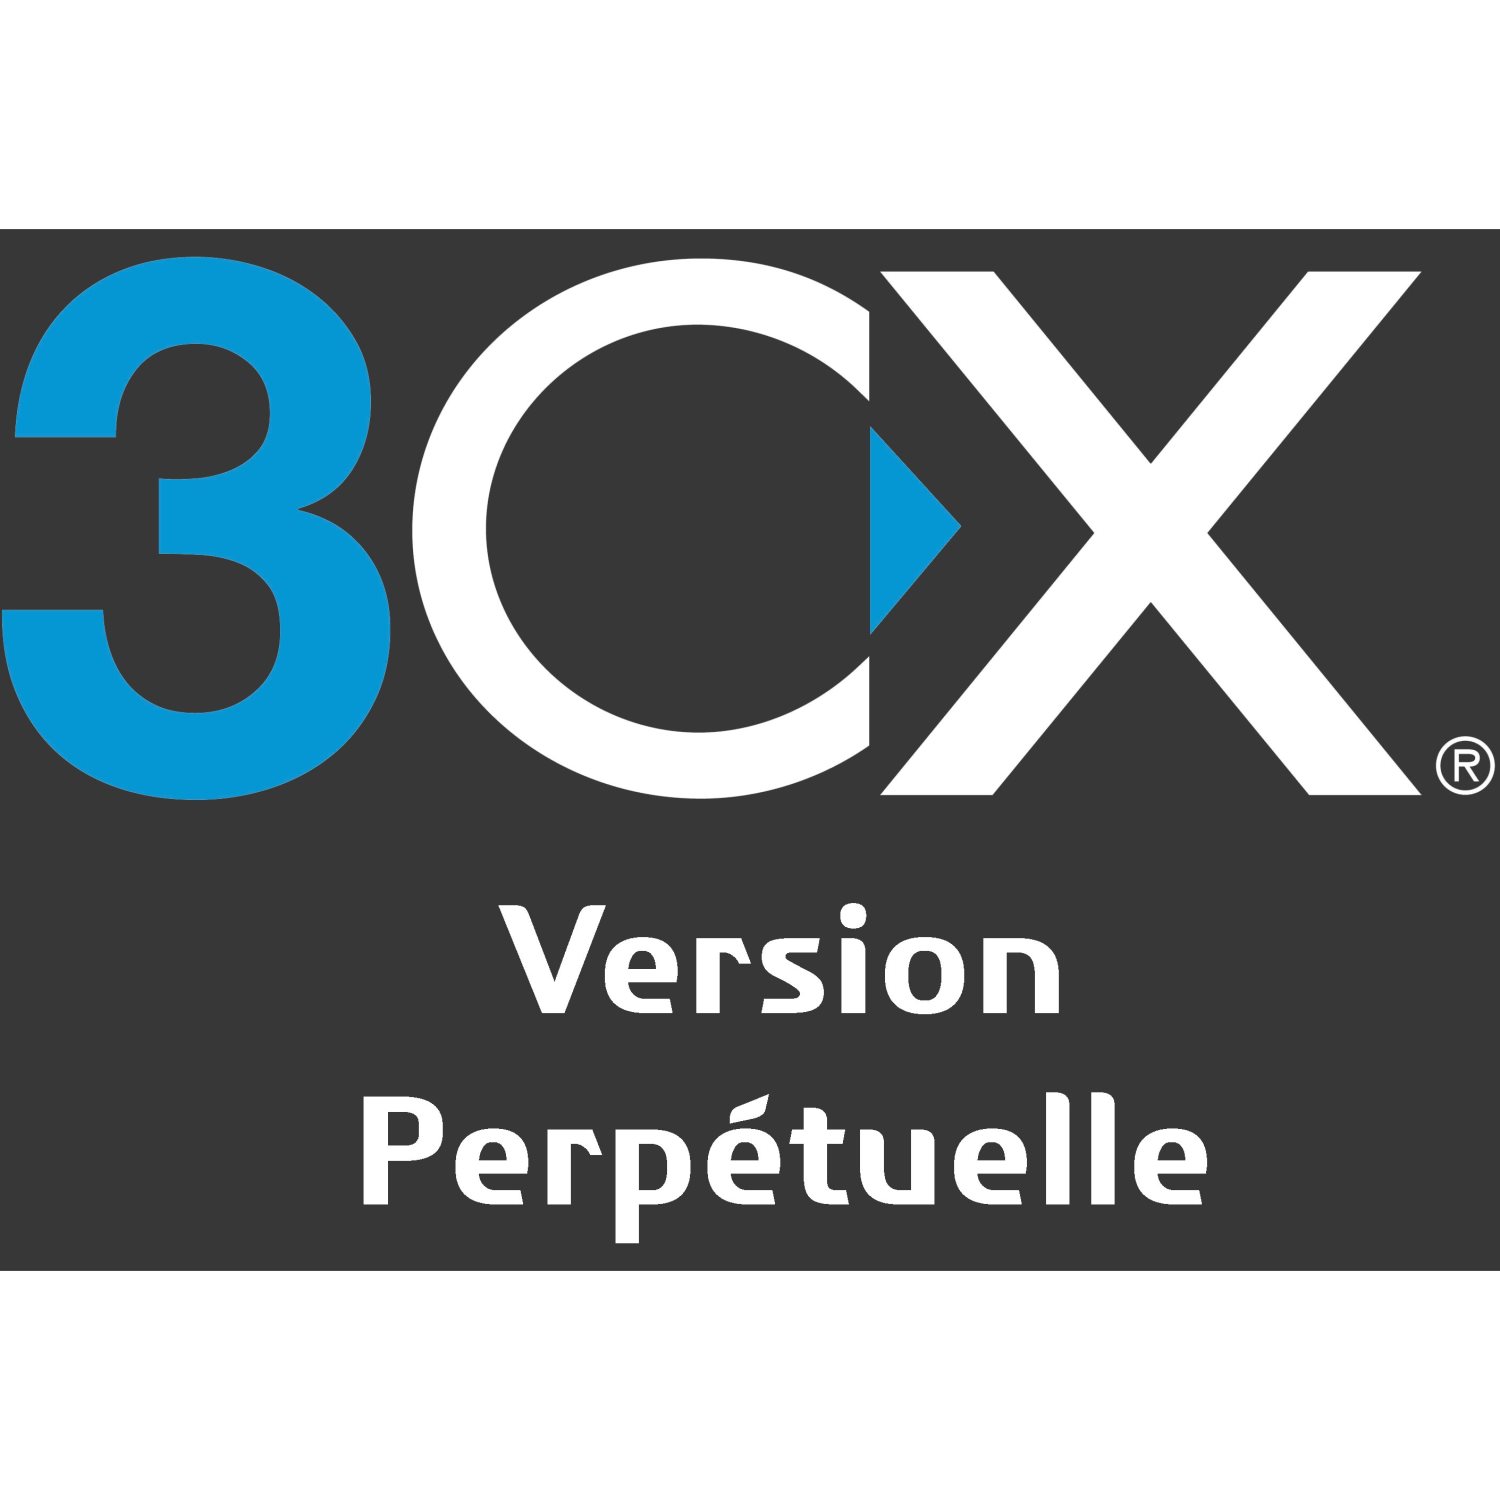 Logiciel IPBX 3CX par 3CX